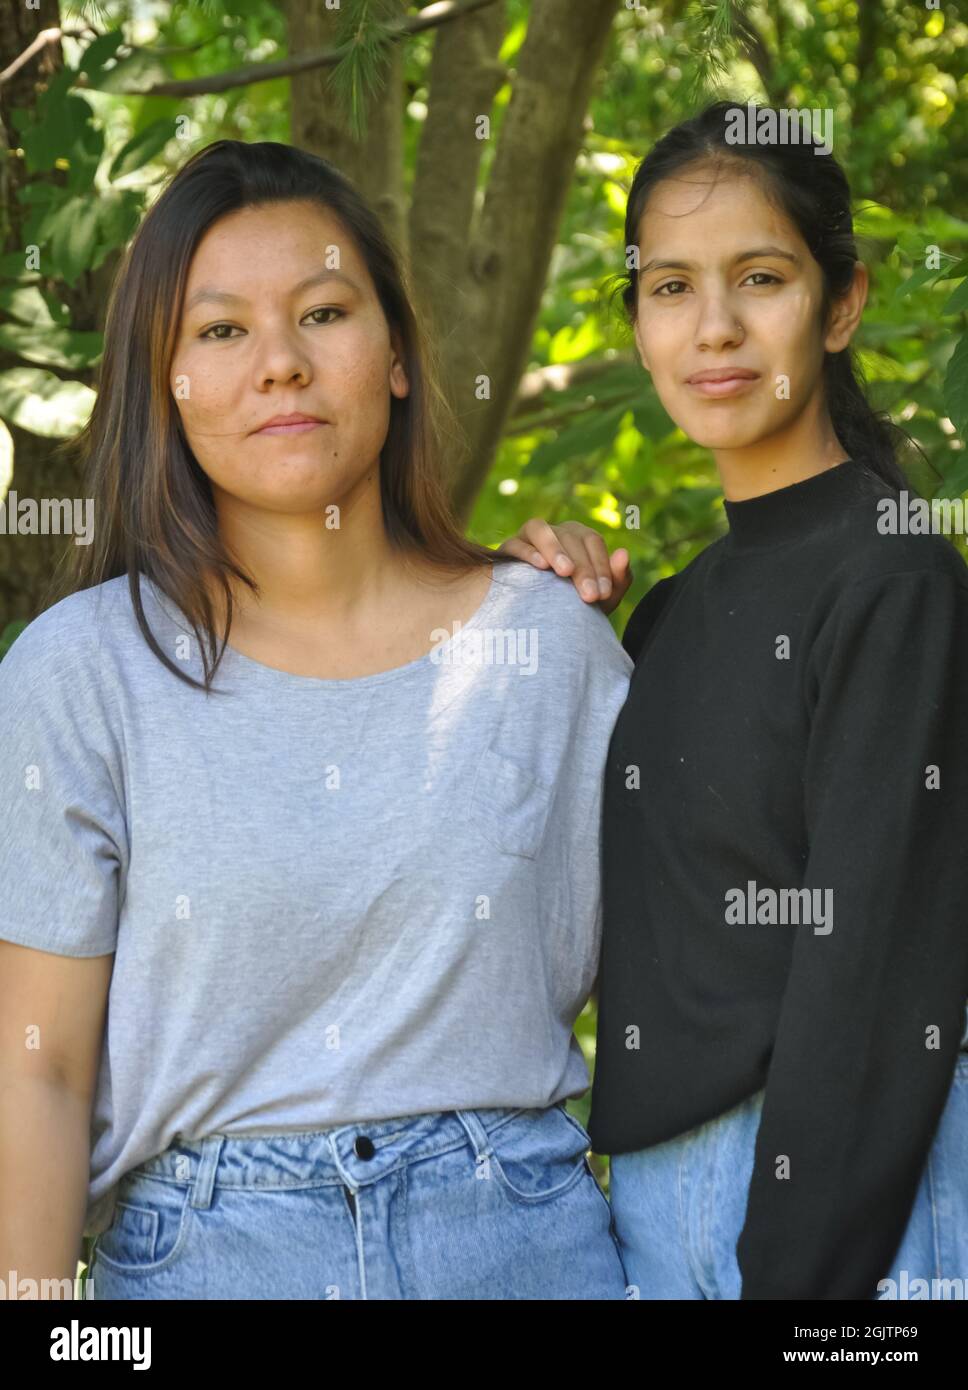 Ritratto di due belle ragazze del sud asiatico in posa all'aperto contro l'albero lesfy con guardare la macchina fotografica Foto Stock